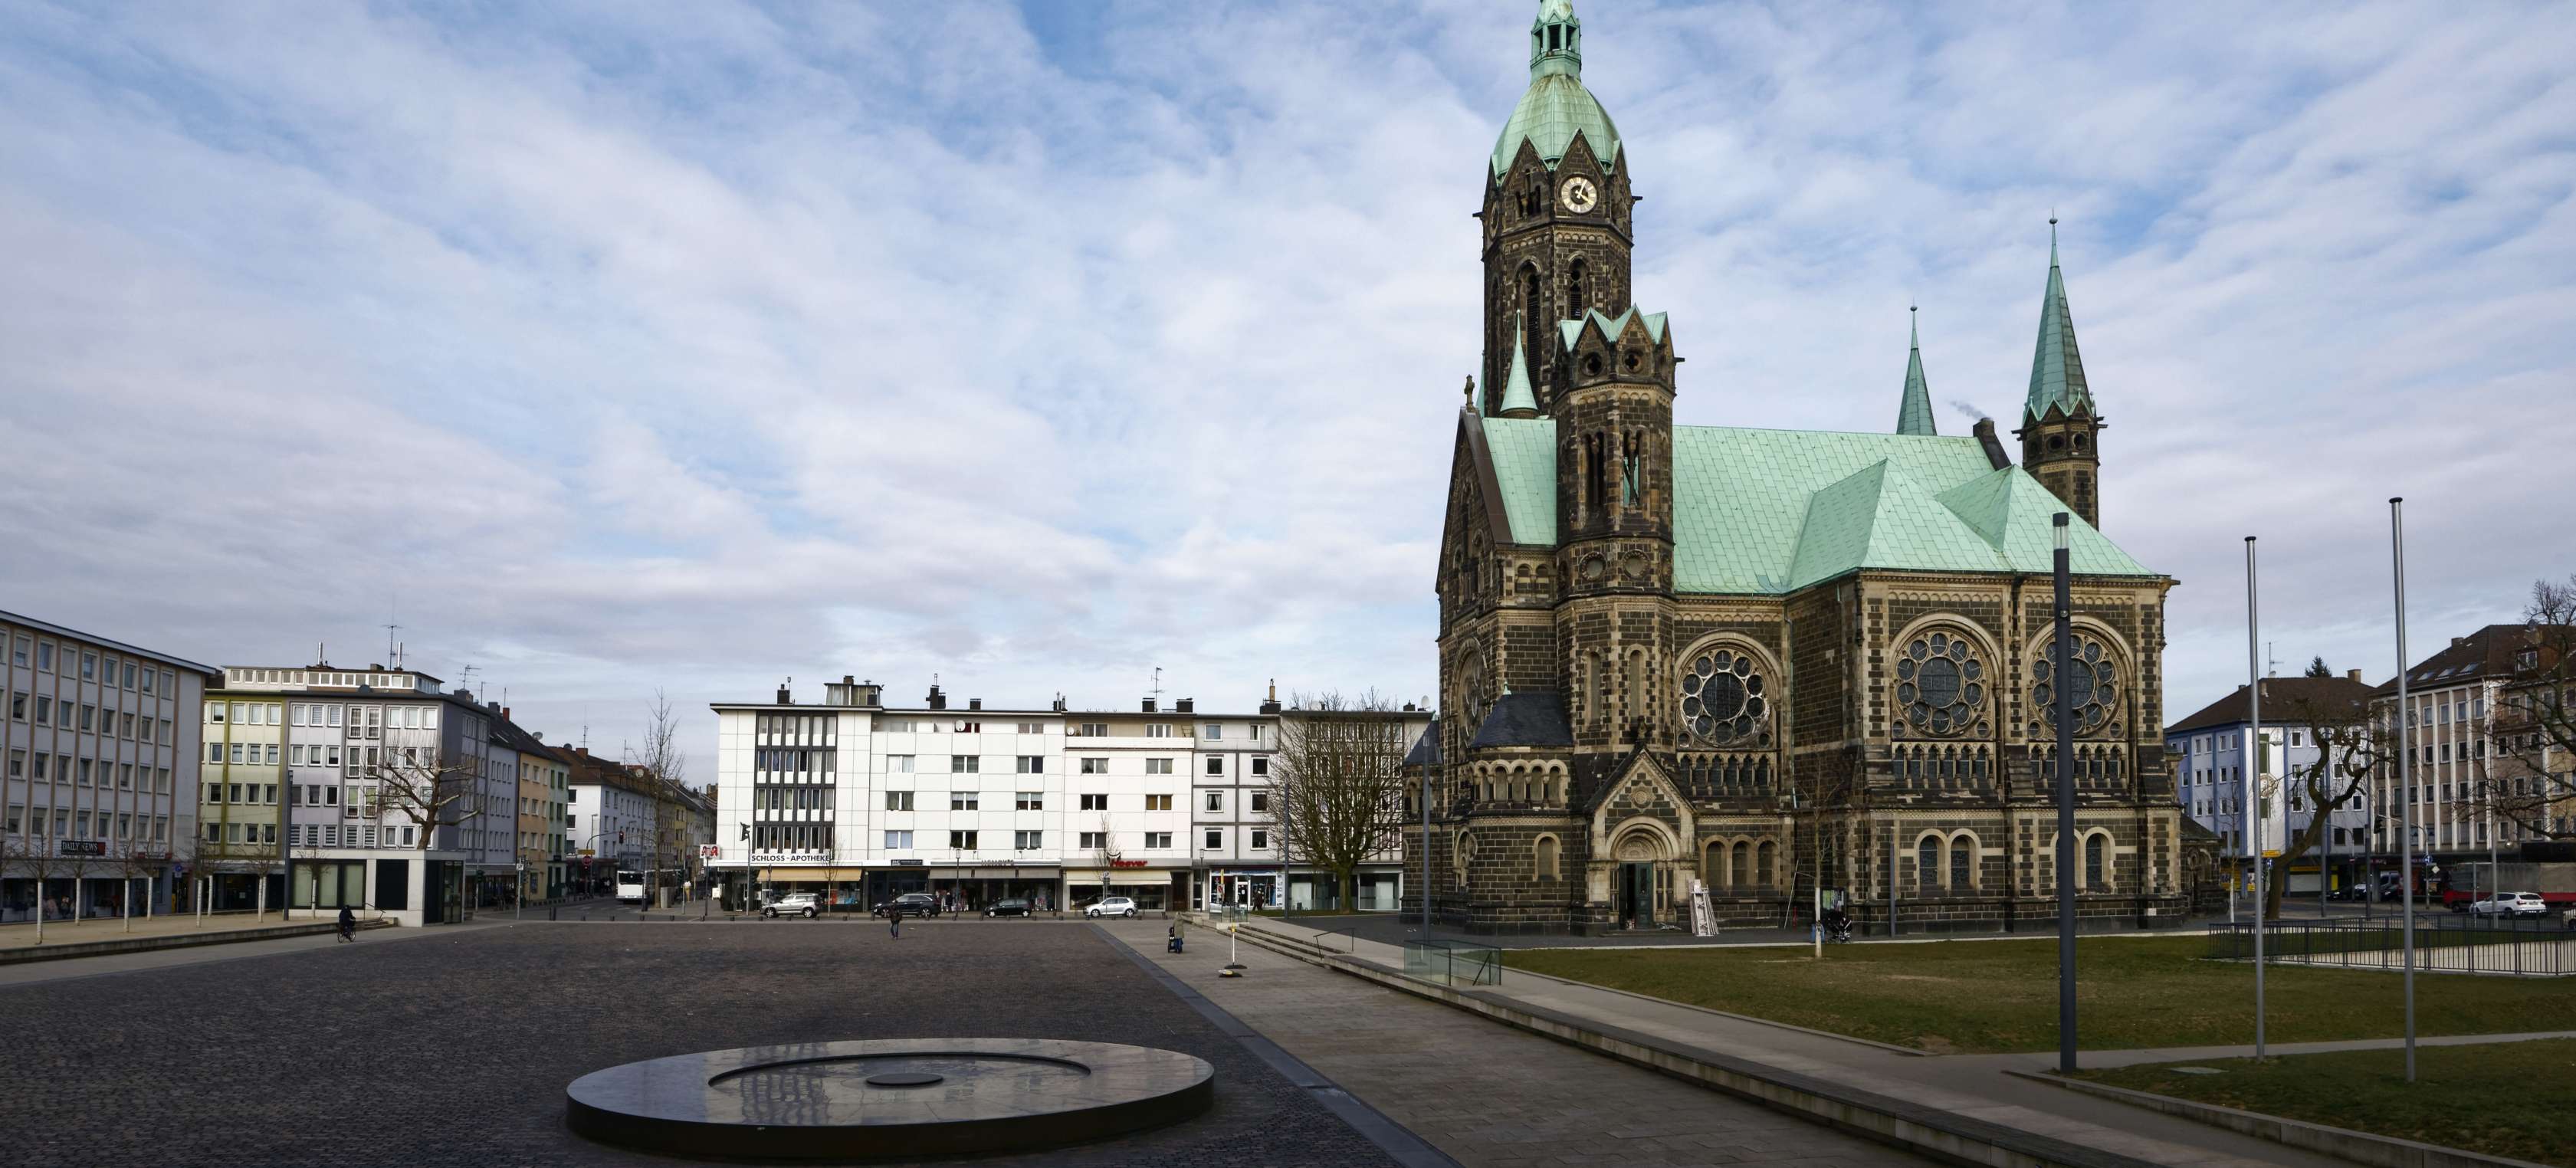 Blick auf die Evangelische Hauptkirche Rheydt auf dem Marktplatz in Mönchengladbach